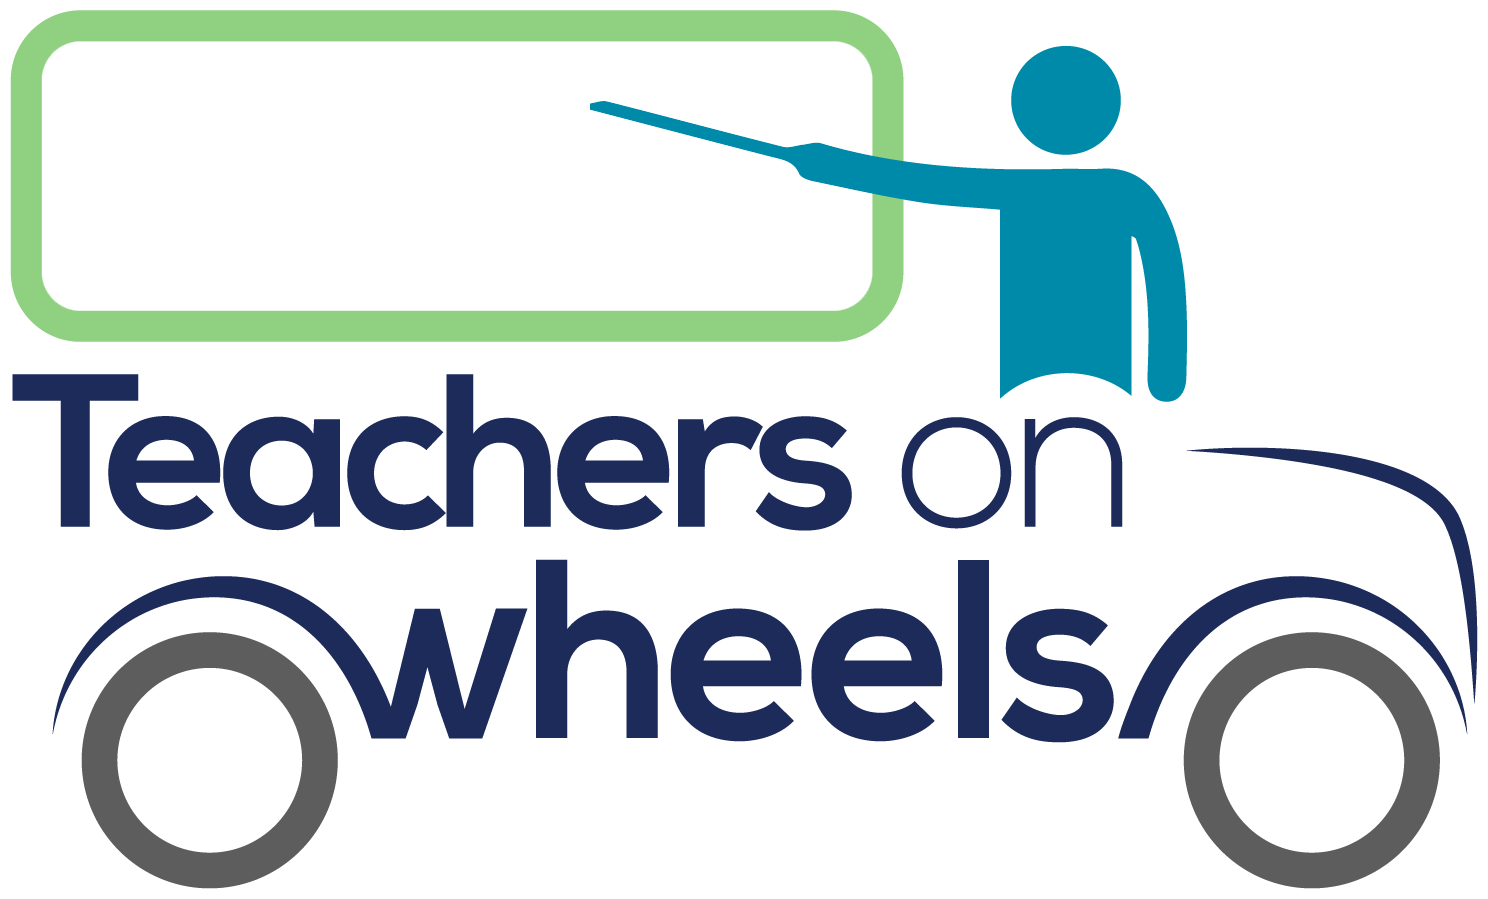 Teachers on Wheels